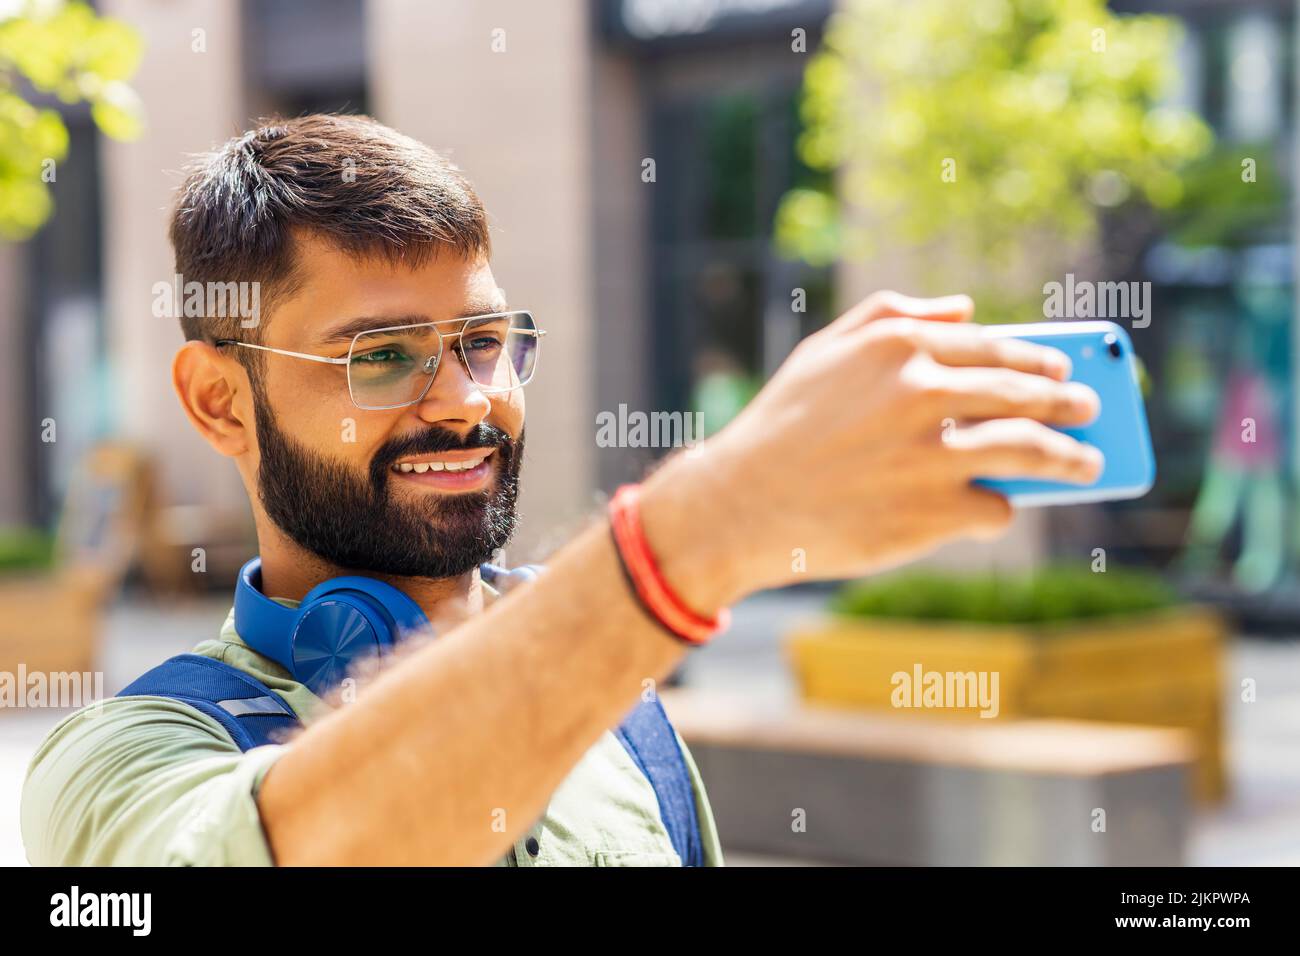 studente indiano con cuffia blu e zaino che scatta foto selfie sullo smartphone nelle giornate di sole Foto Stock